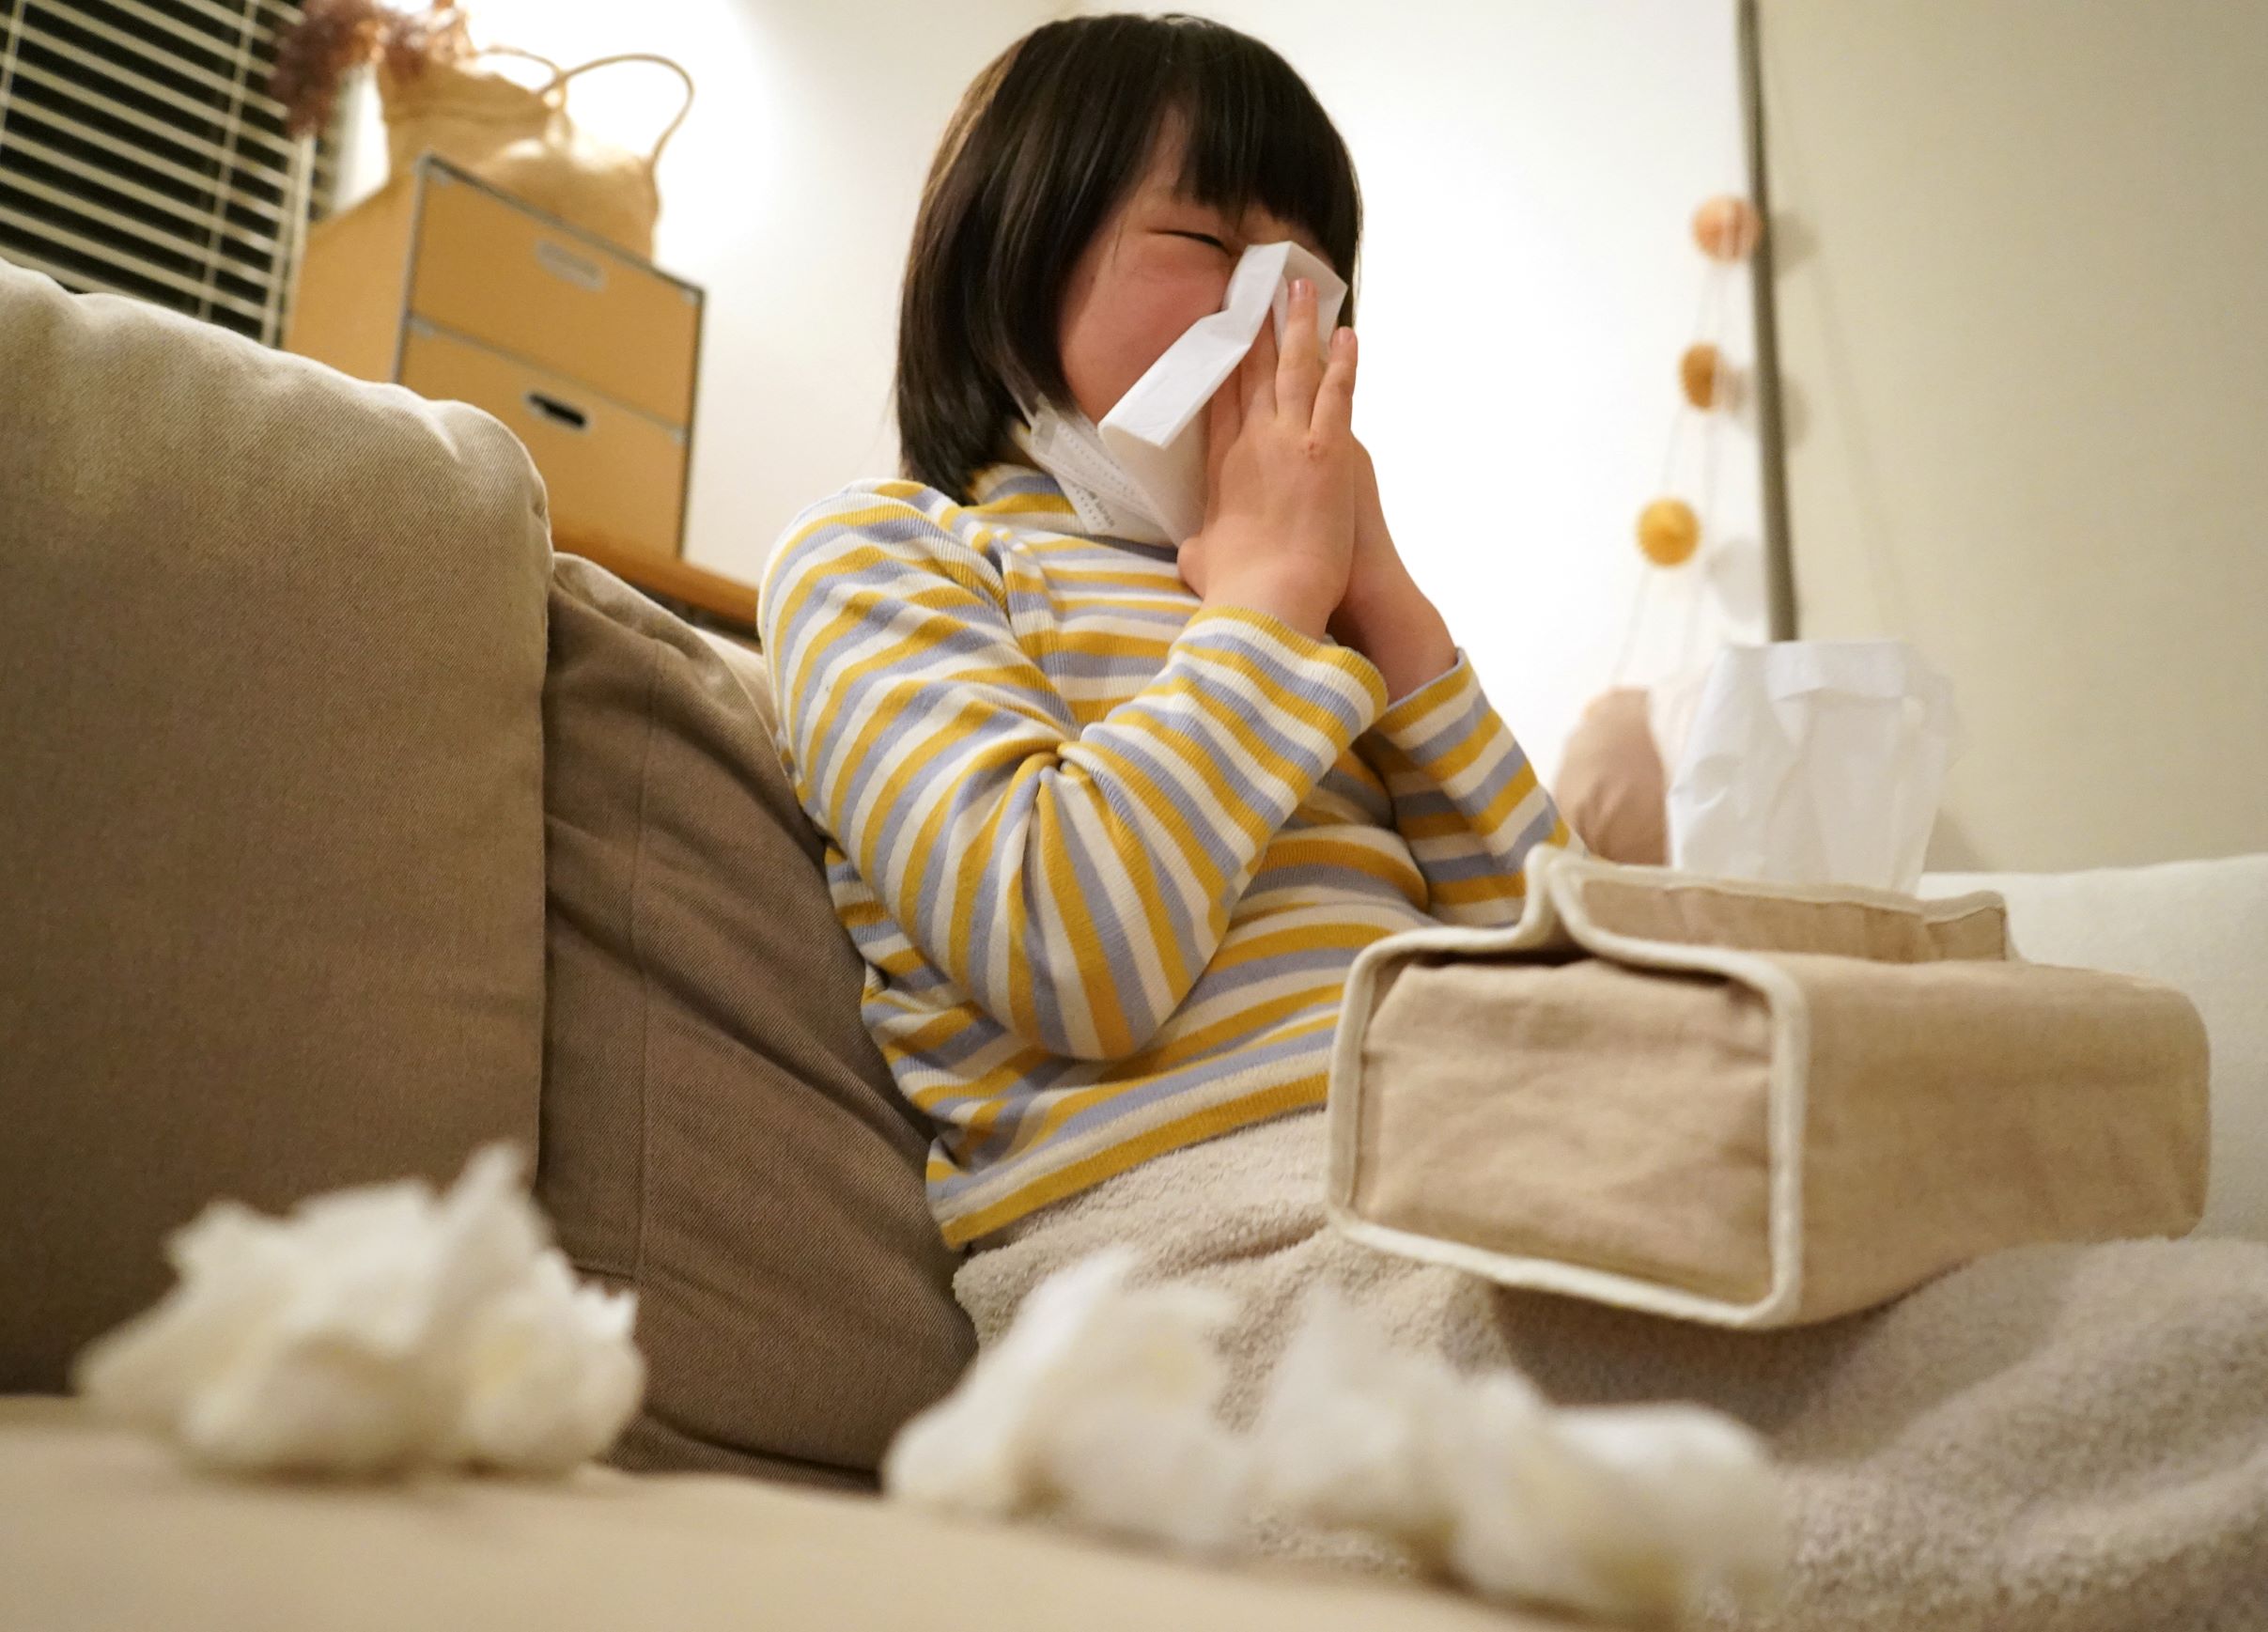 子どもも花粉症になる。花粉飛散時期に透明な鼻水が続いたり、鼻づまりで口を頻繁に開けたりする様子が見られたら、花粉症の可能性がある